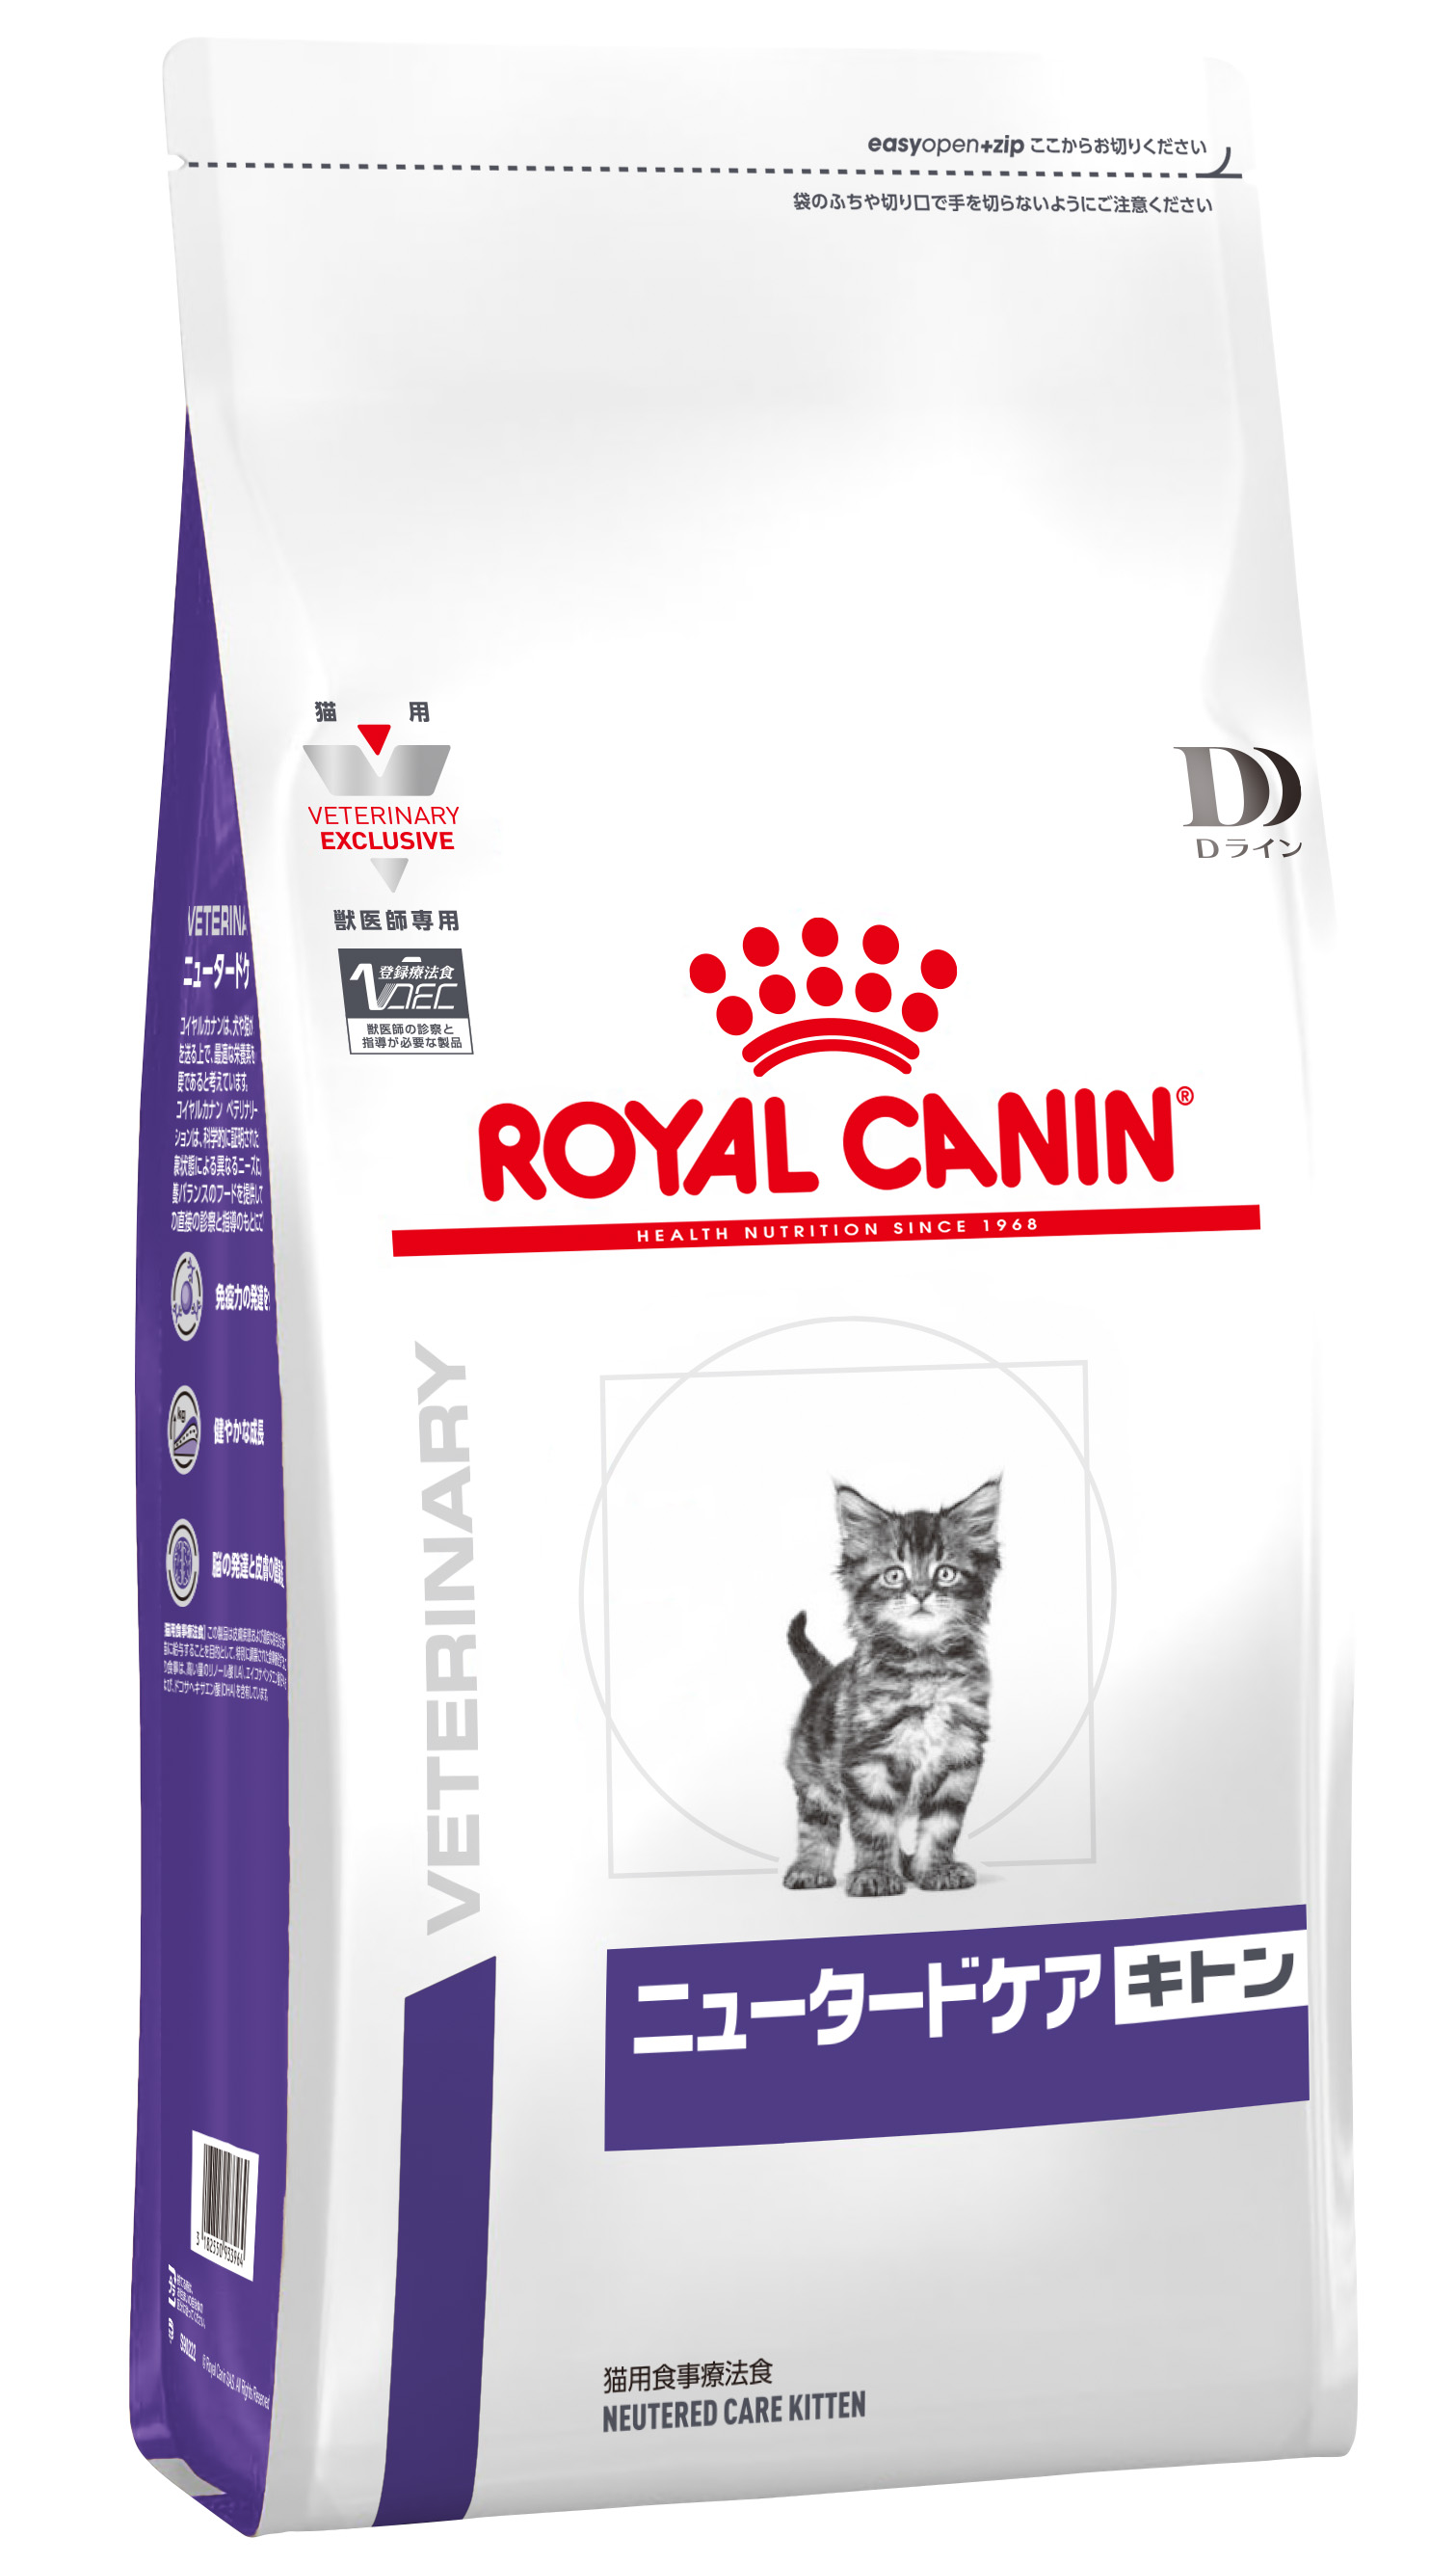 ロイヤルカナン ベッツプラン 猫 ニュータードケア 3.5kg - ペットフード